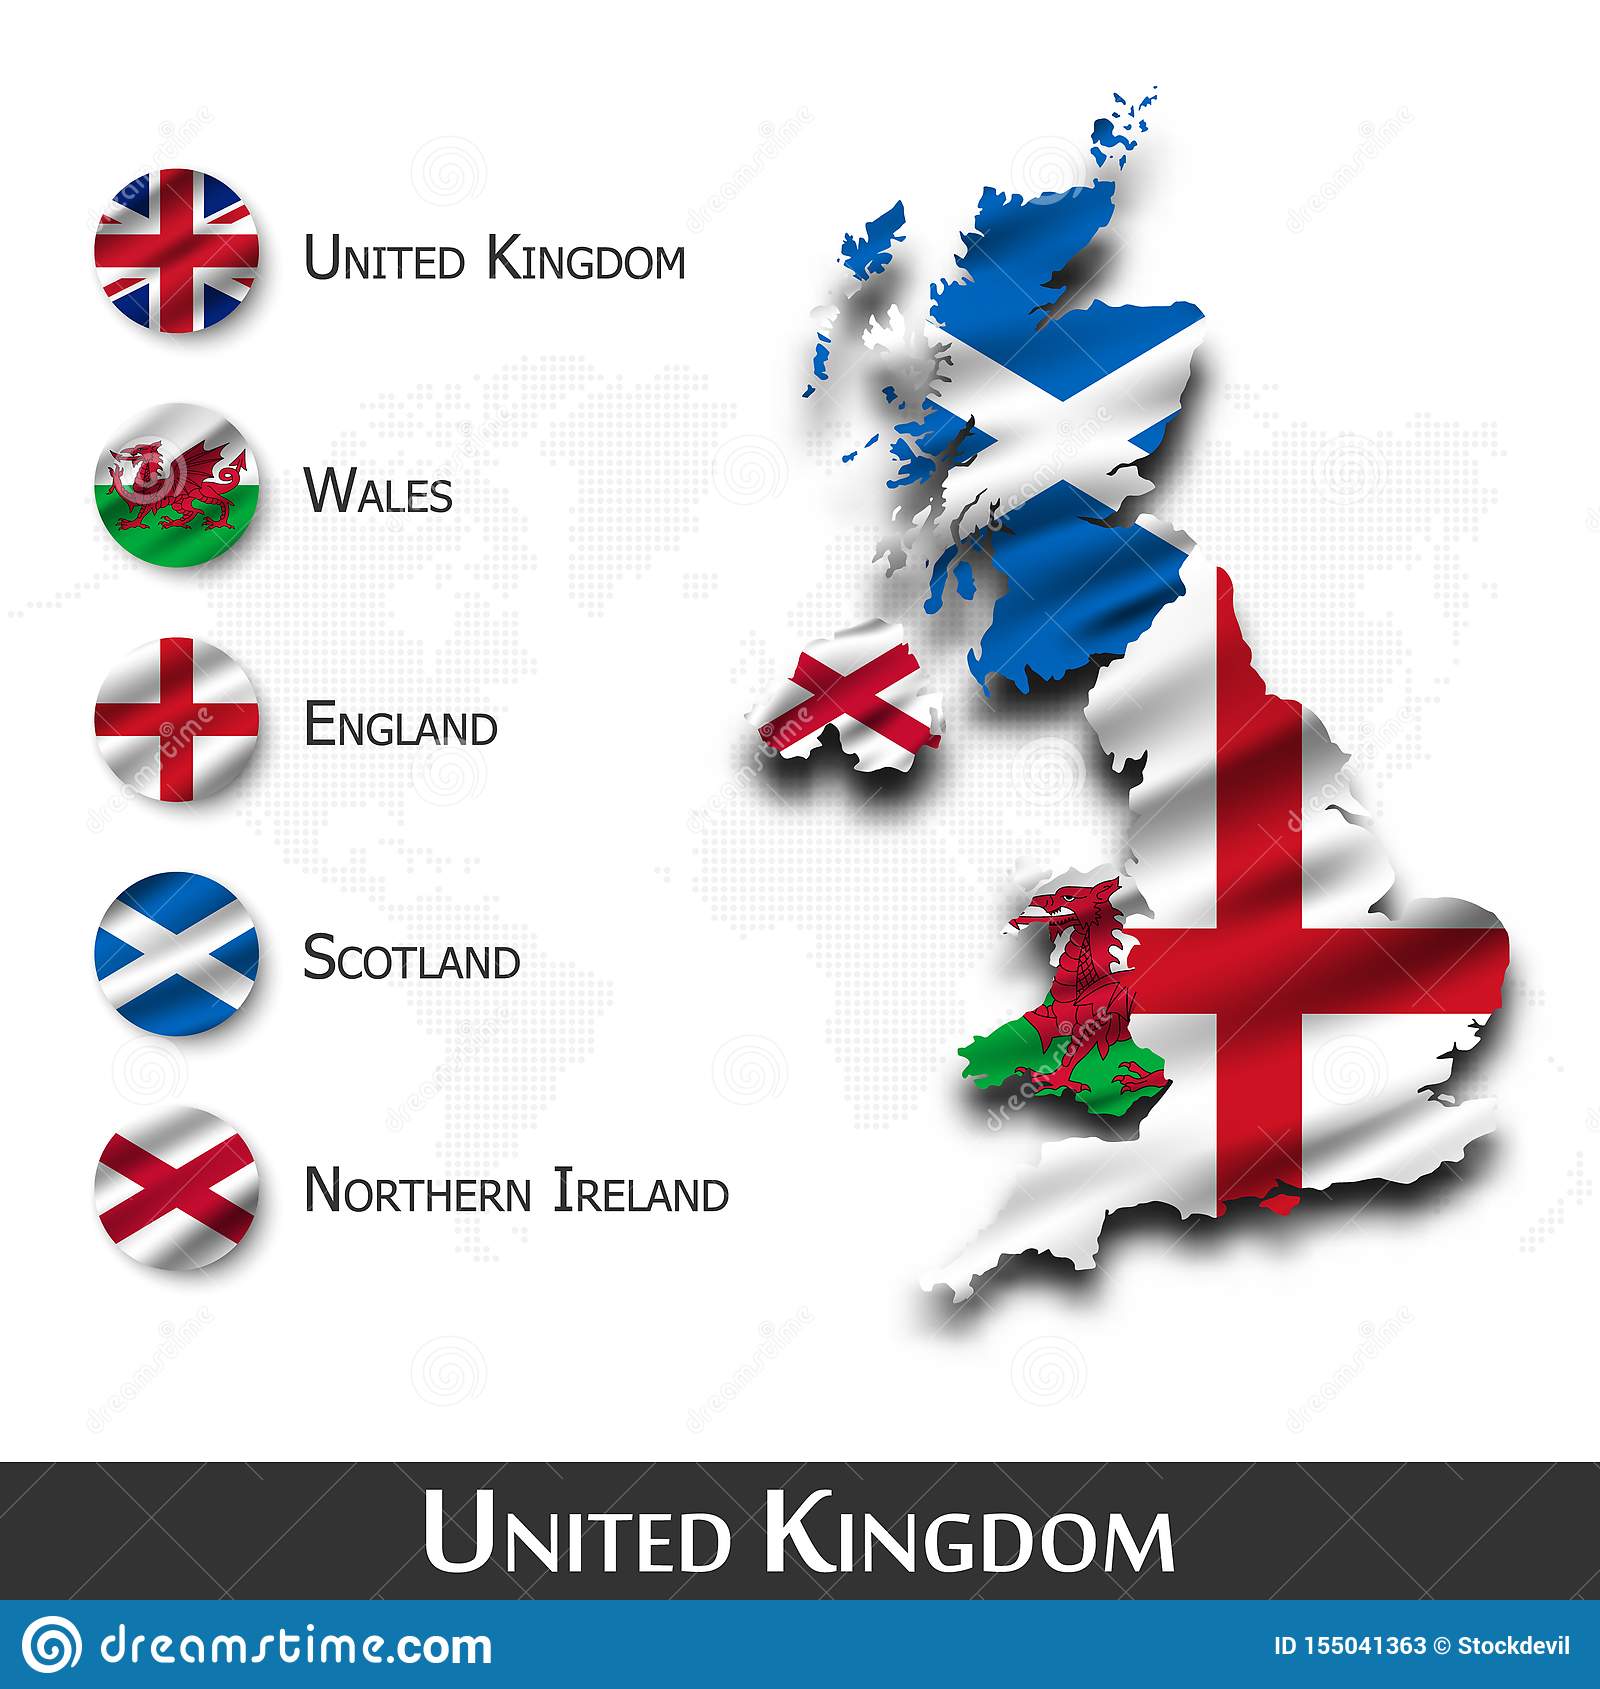 Cтраны великобритании и их столицы на карте +список, флаги